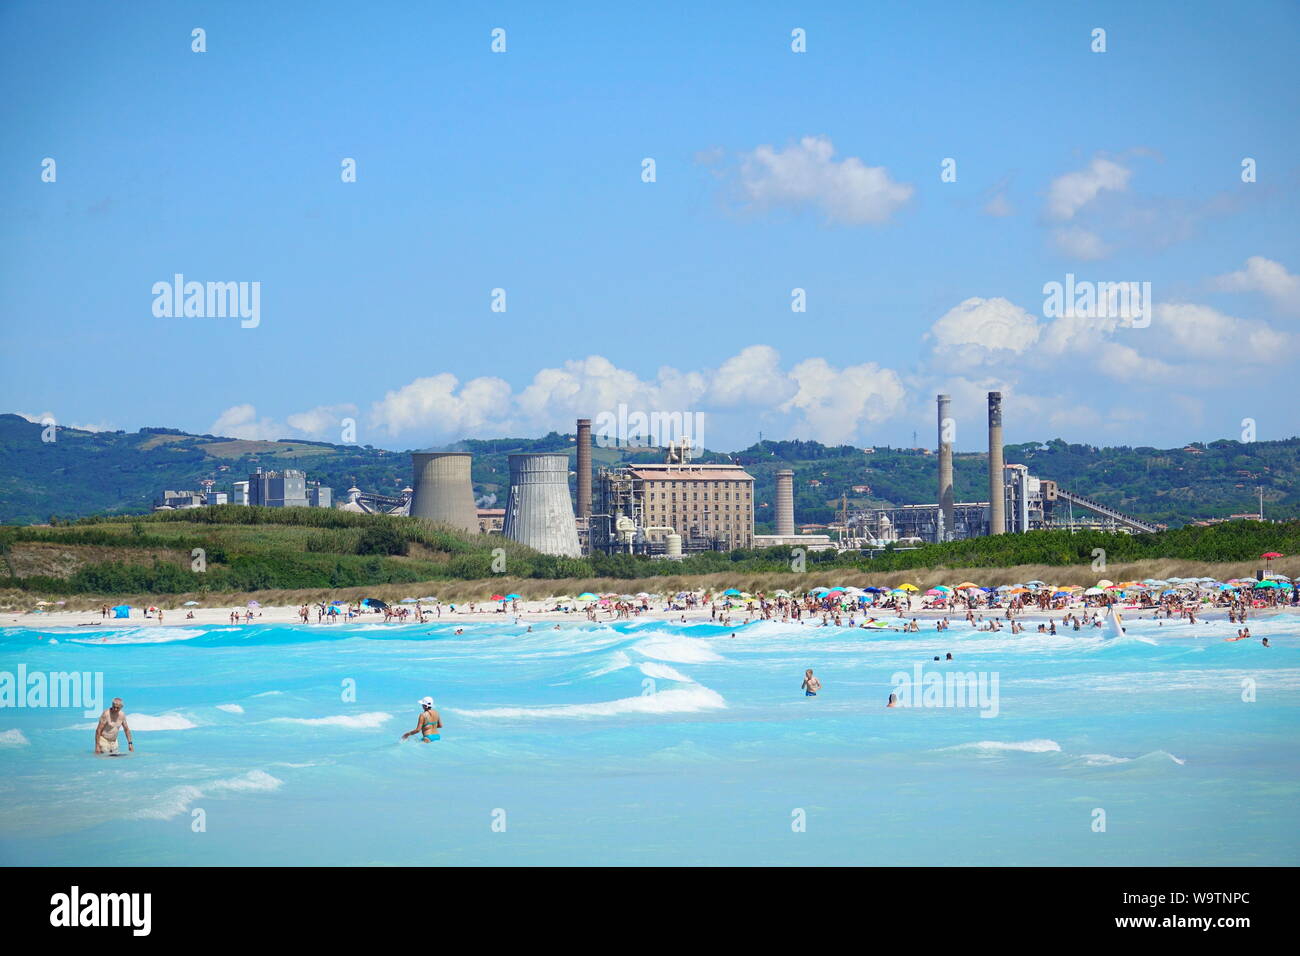 Les plages de sable blanc sont parmi les plus polluées de l'Italie. Rosignano, Toscane Italie - Août 2019 Banque D'Images